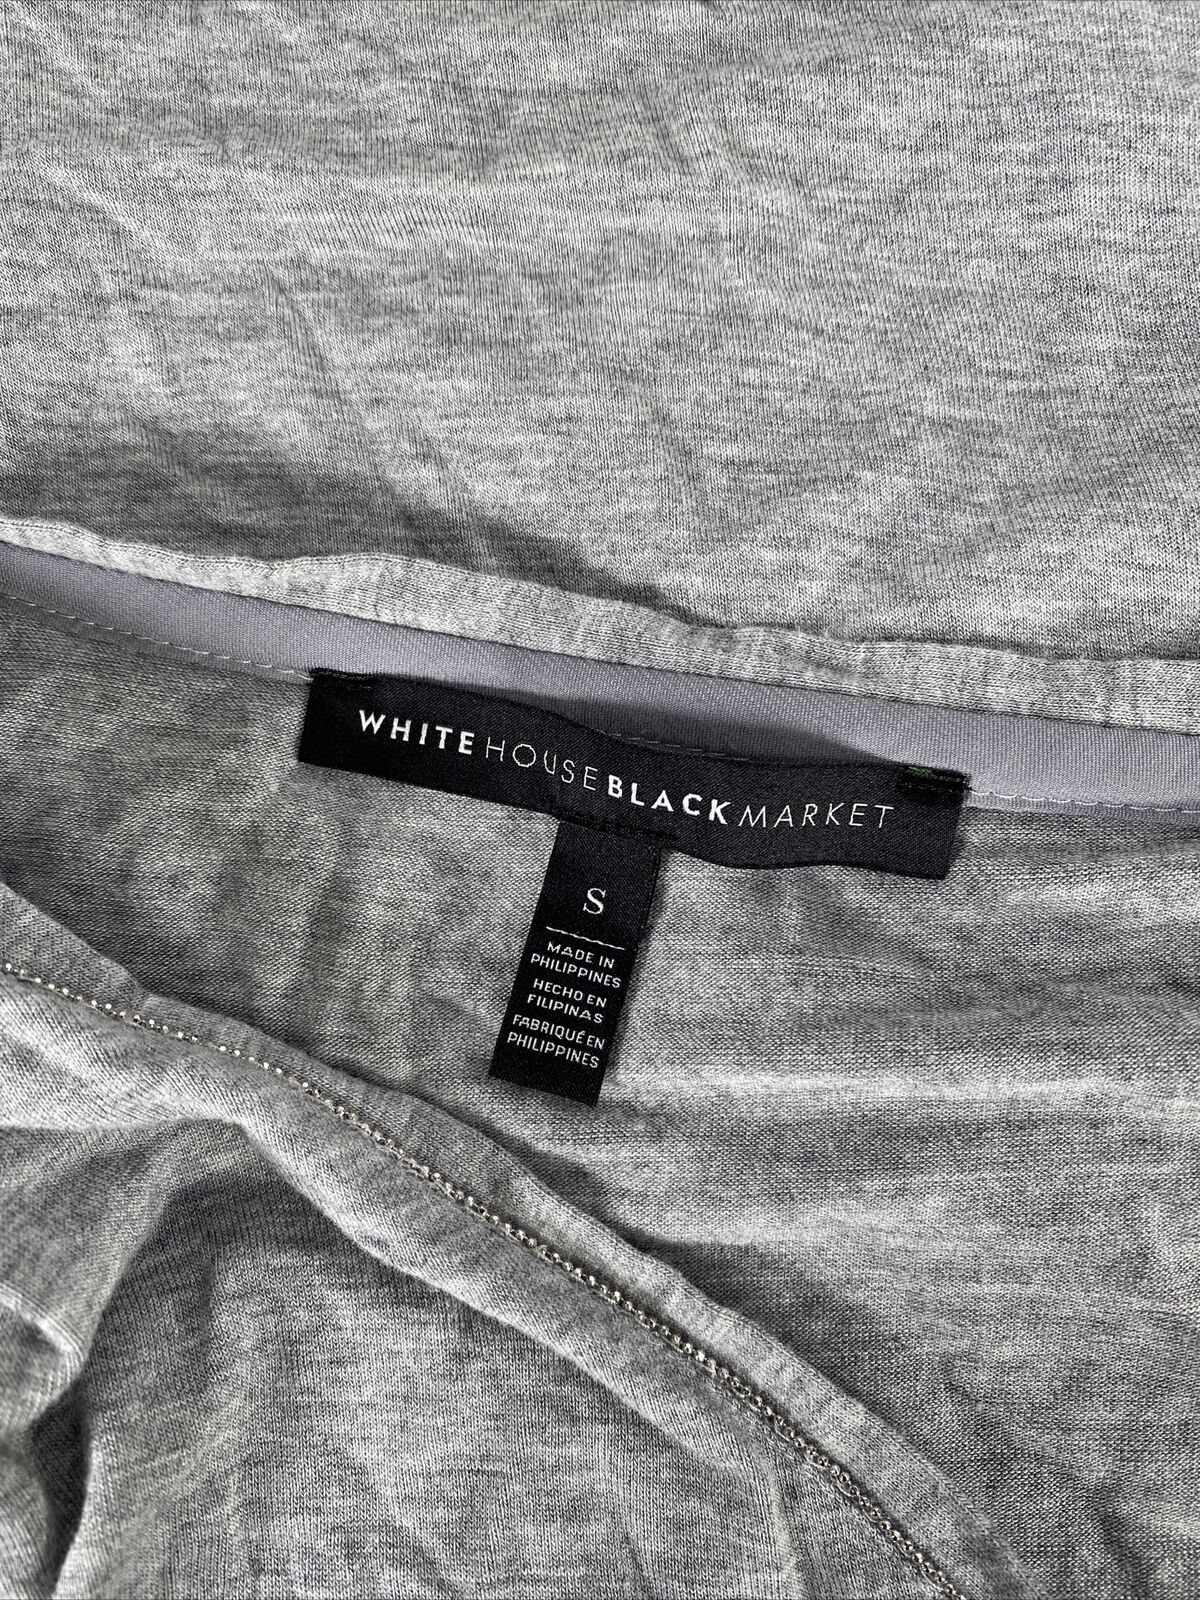 White House Black Market Women's Gray Long Sleeve V-Neck T-Shirt Sz S